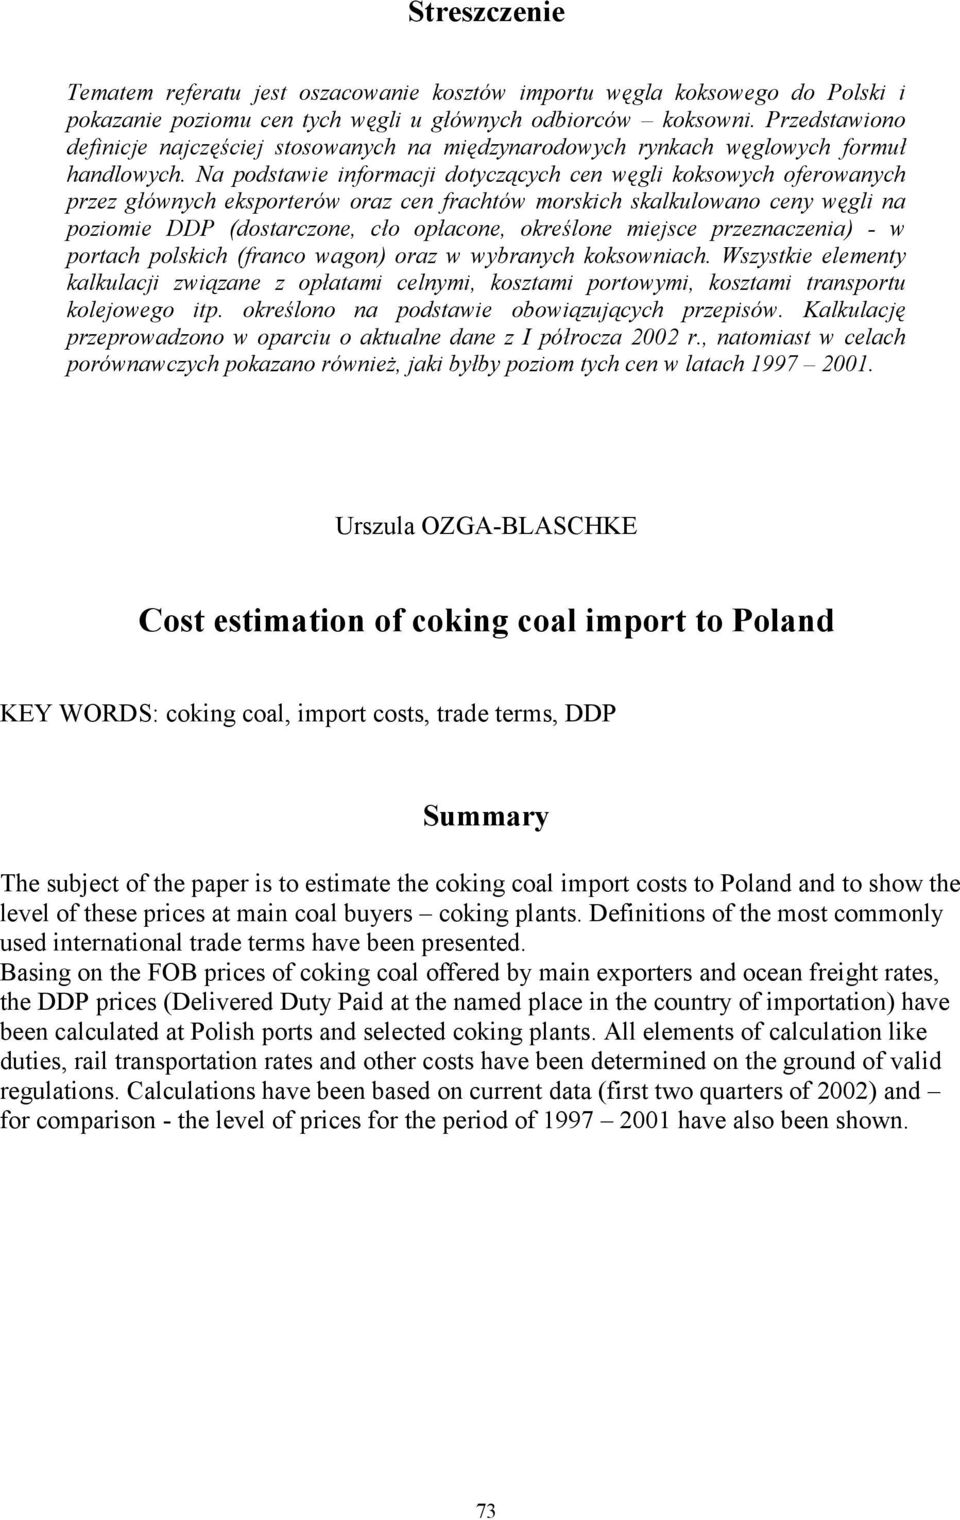 Na podstawie informacji dotyczących cen węgli koksowych oferowanych przez głównych eksporterów oraz cen frachtów morskich skalkulowano ceny węgli na poziomie DDP (dostarczone, cło opłacone, określone